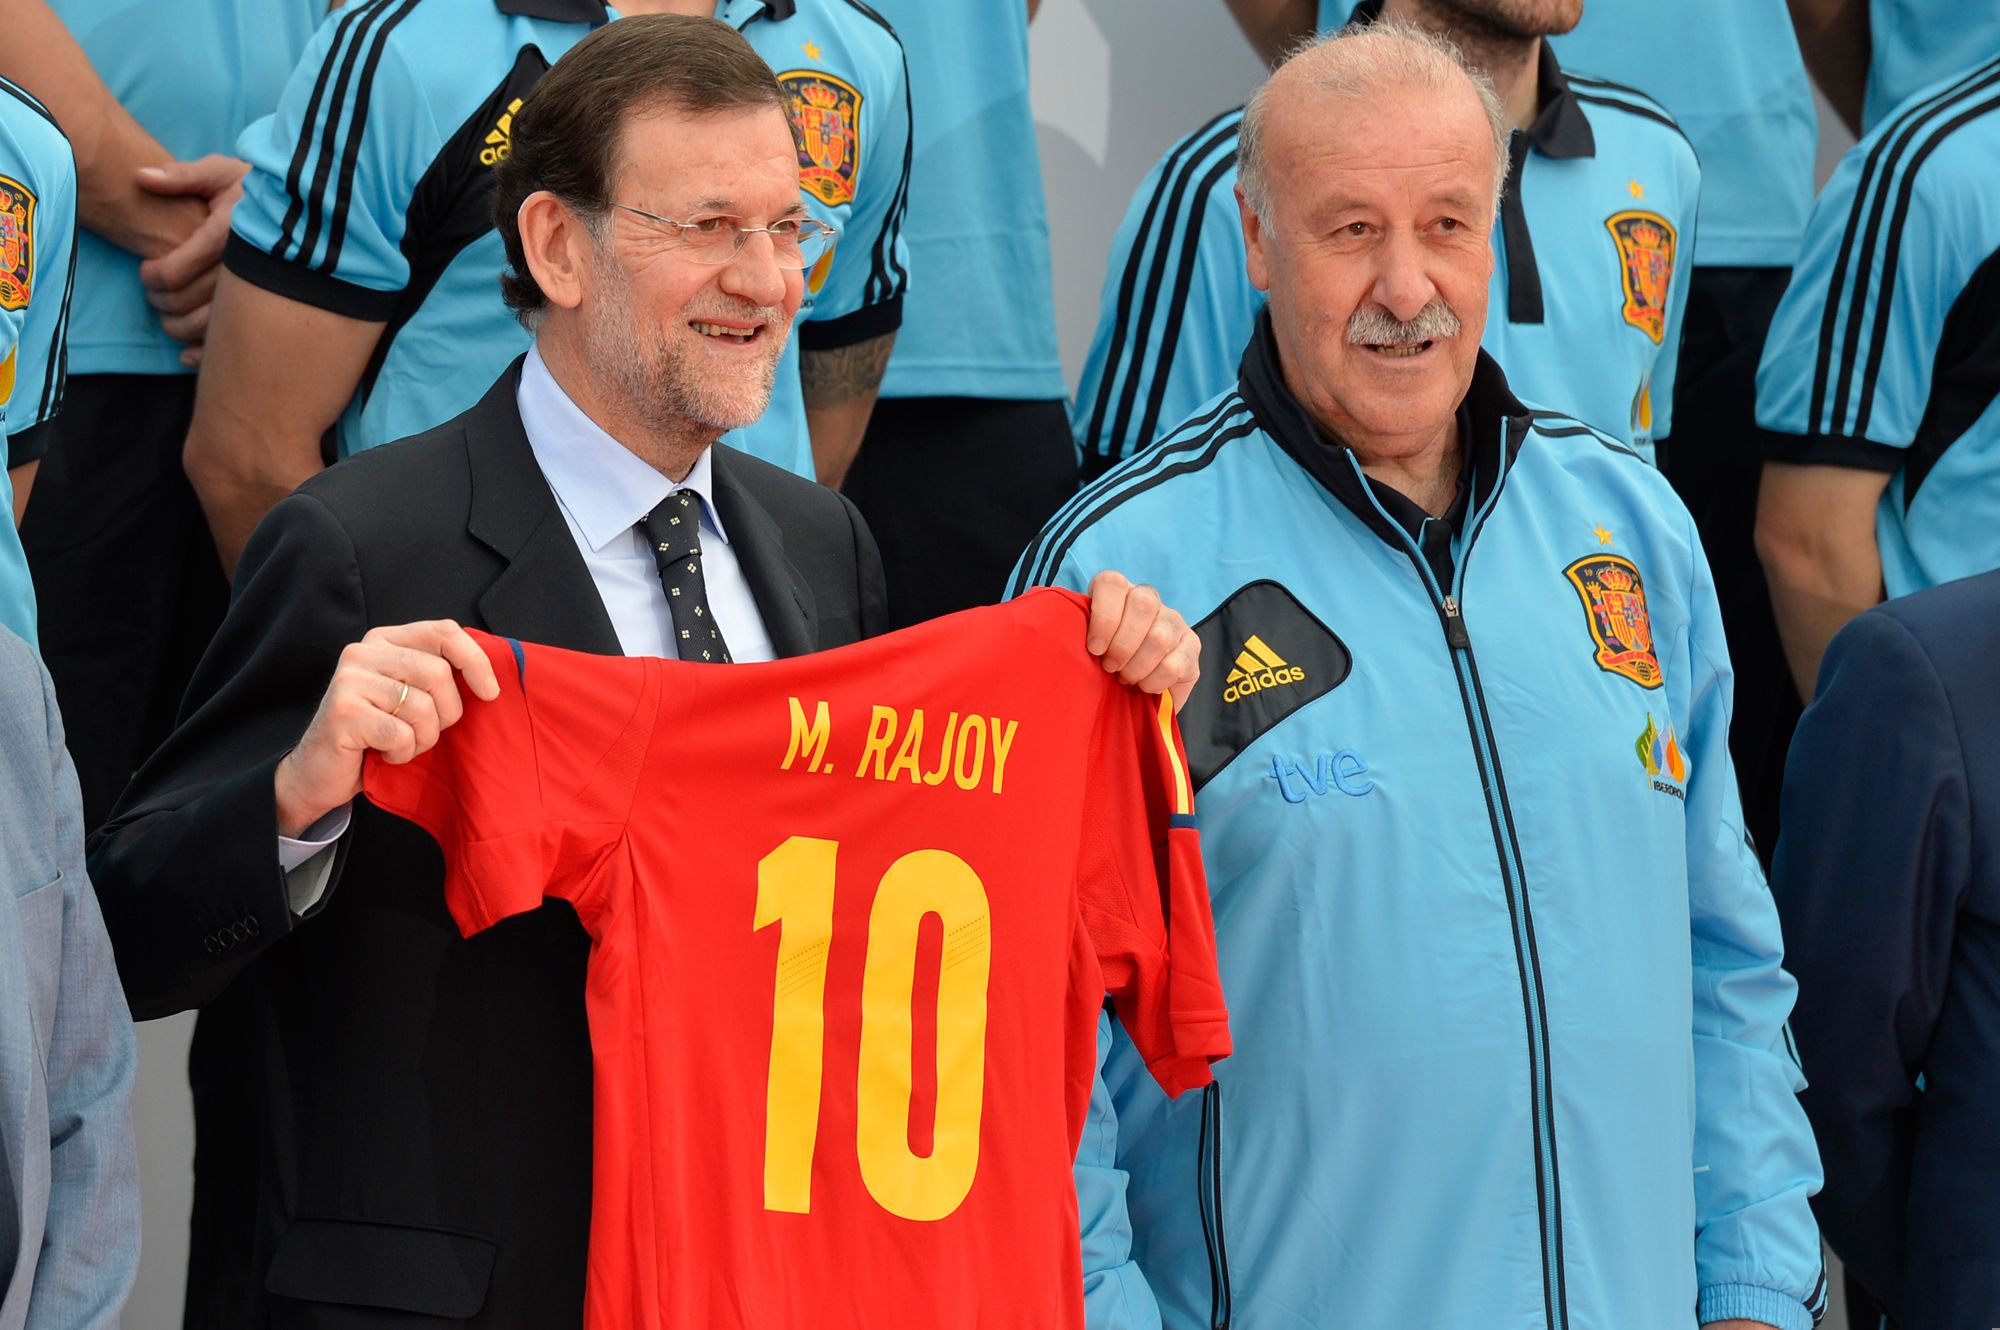 Rajoy con una camiseta de la selección en su etapa como presidente.